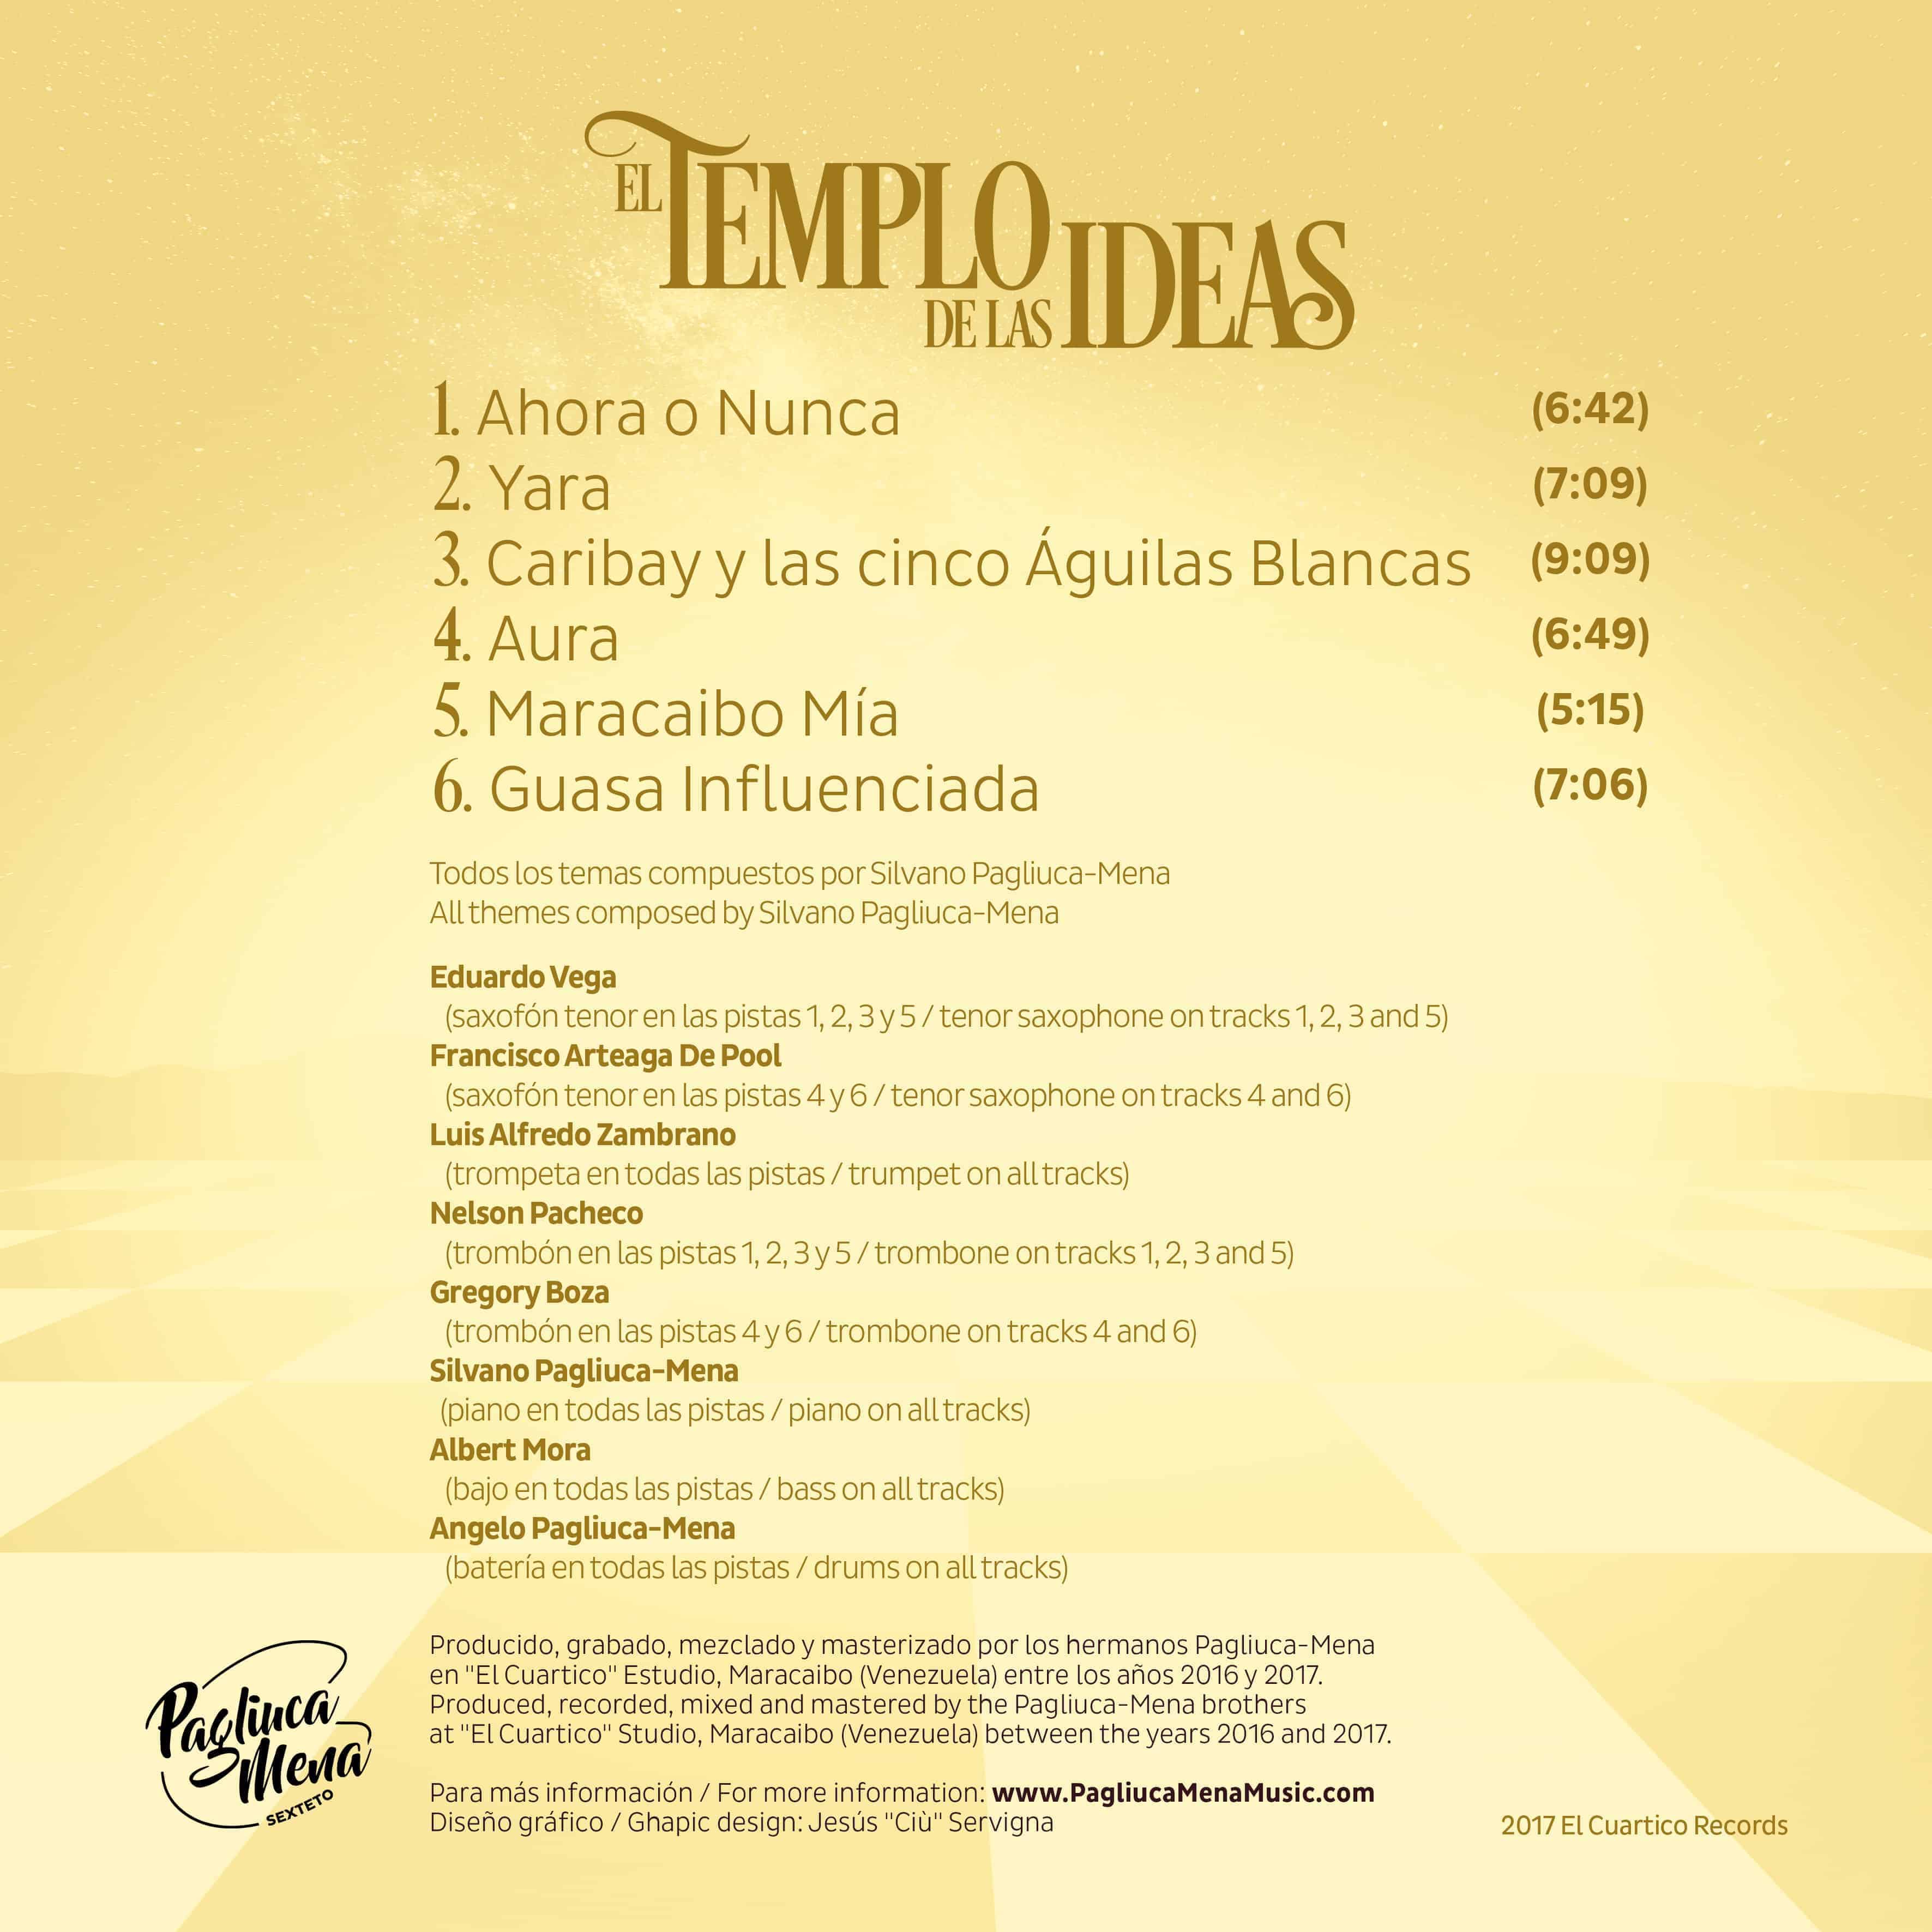 Album list El templo de las ideas